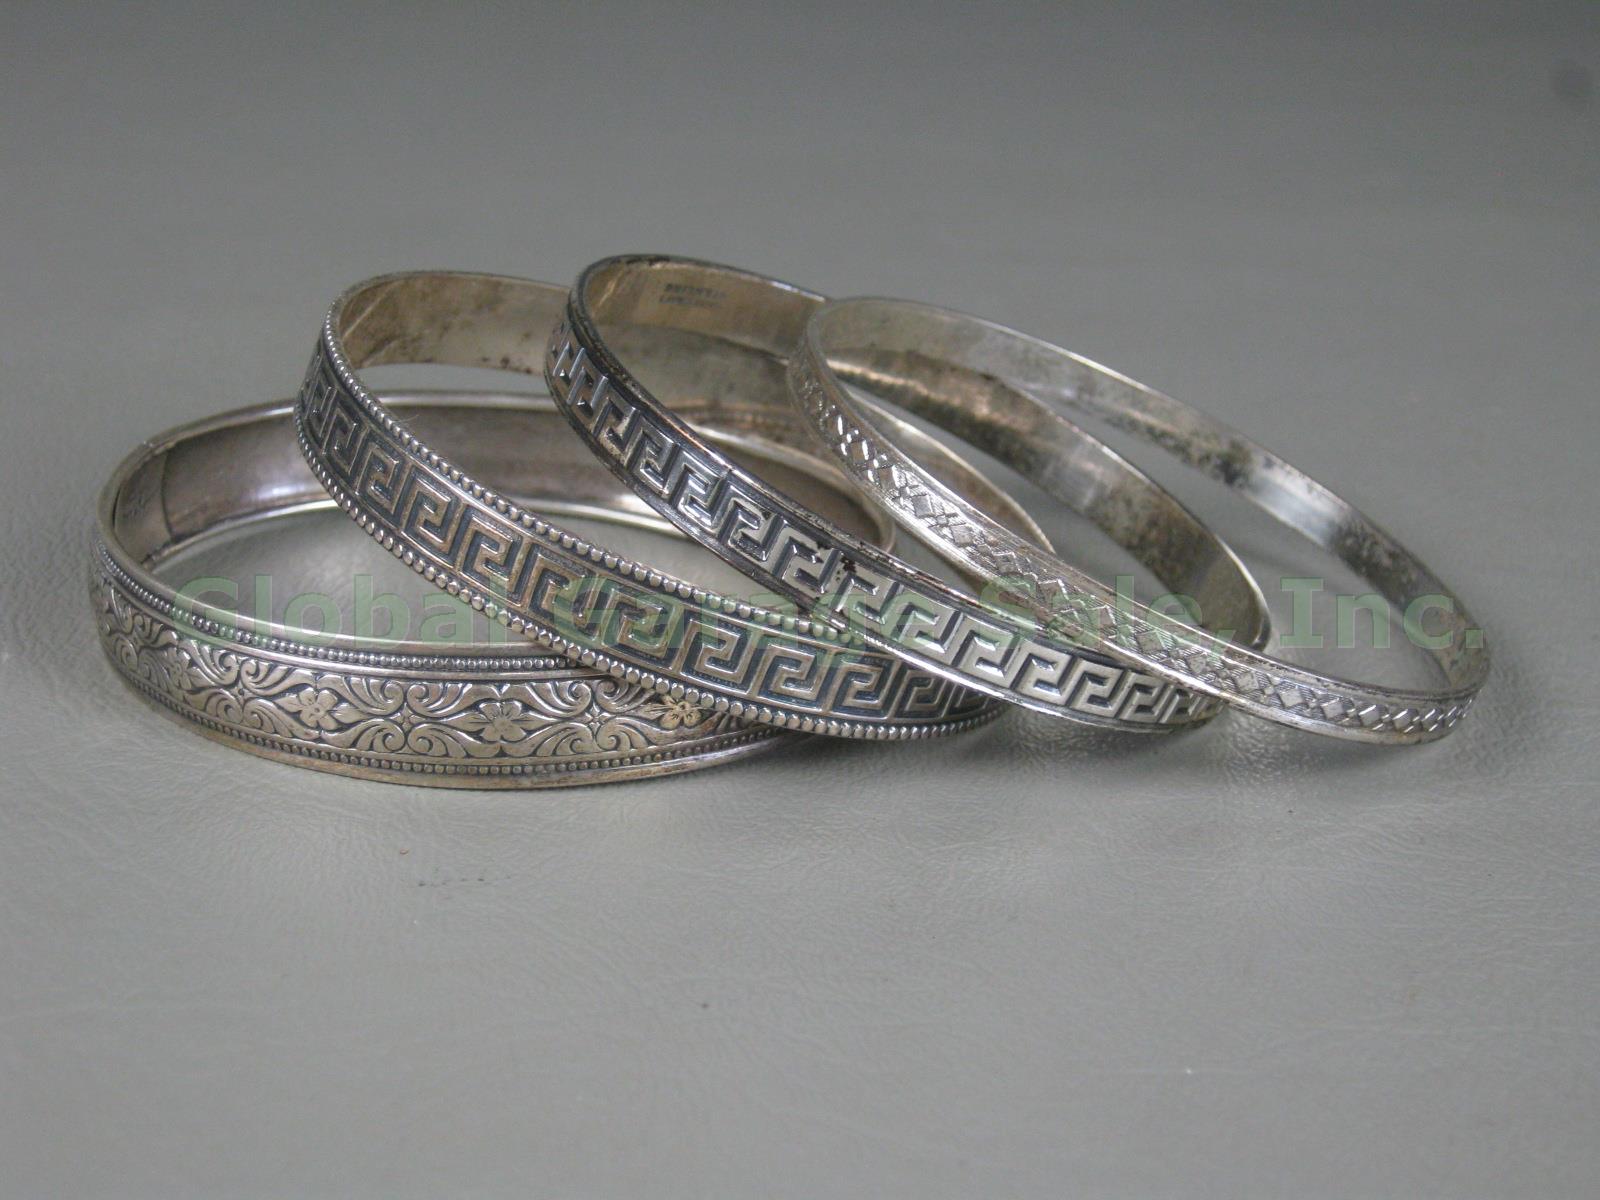 4 Vtg Danecraft Sterling Silver Bangle Bracelet Lot Greek Key Floral Rolled Edge